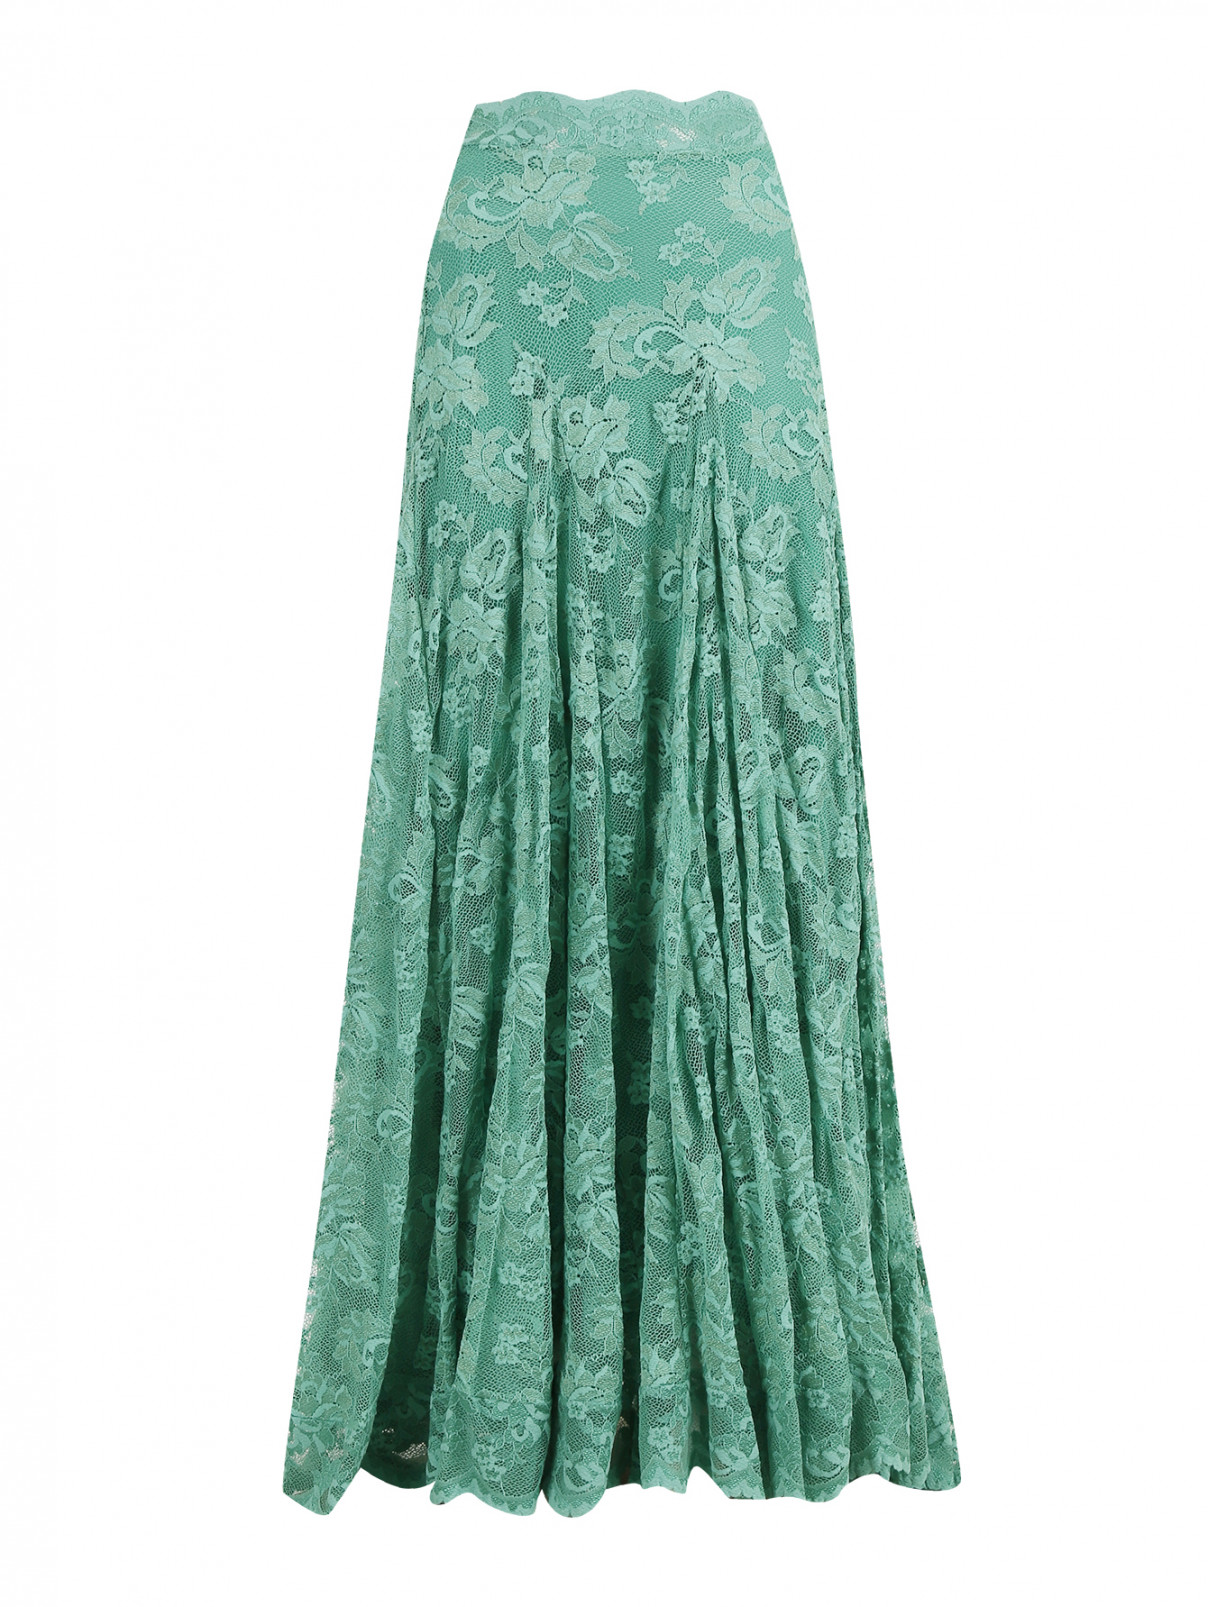 Кружевная юбка-макси Olvi's  –  Общий вид  – Цвет:  Зеленый